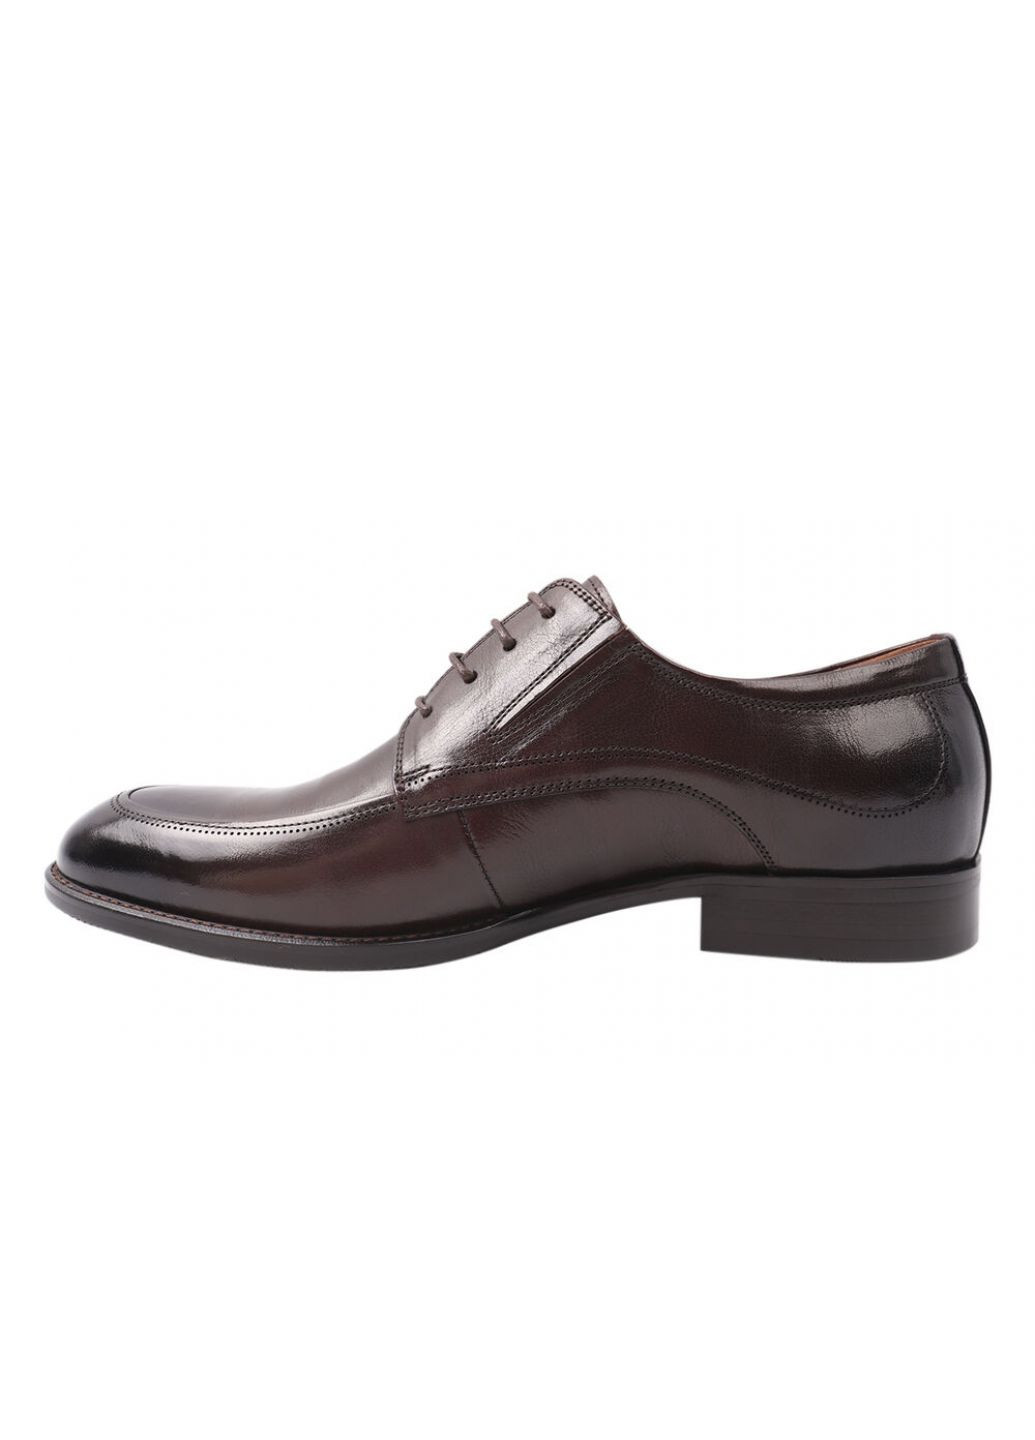 Коричневые туфли мужские из натуральной кожи, на низком ходу, на шнуровке, коричневые, lido marinozi Lido Marinozzi